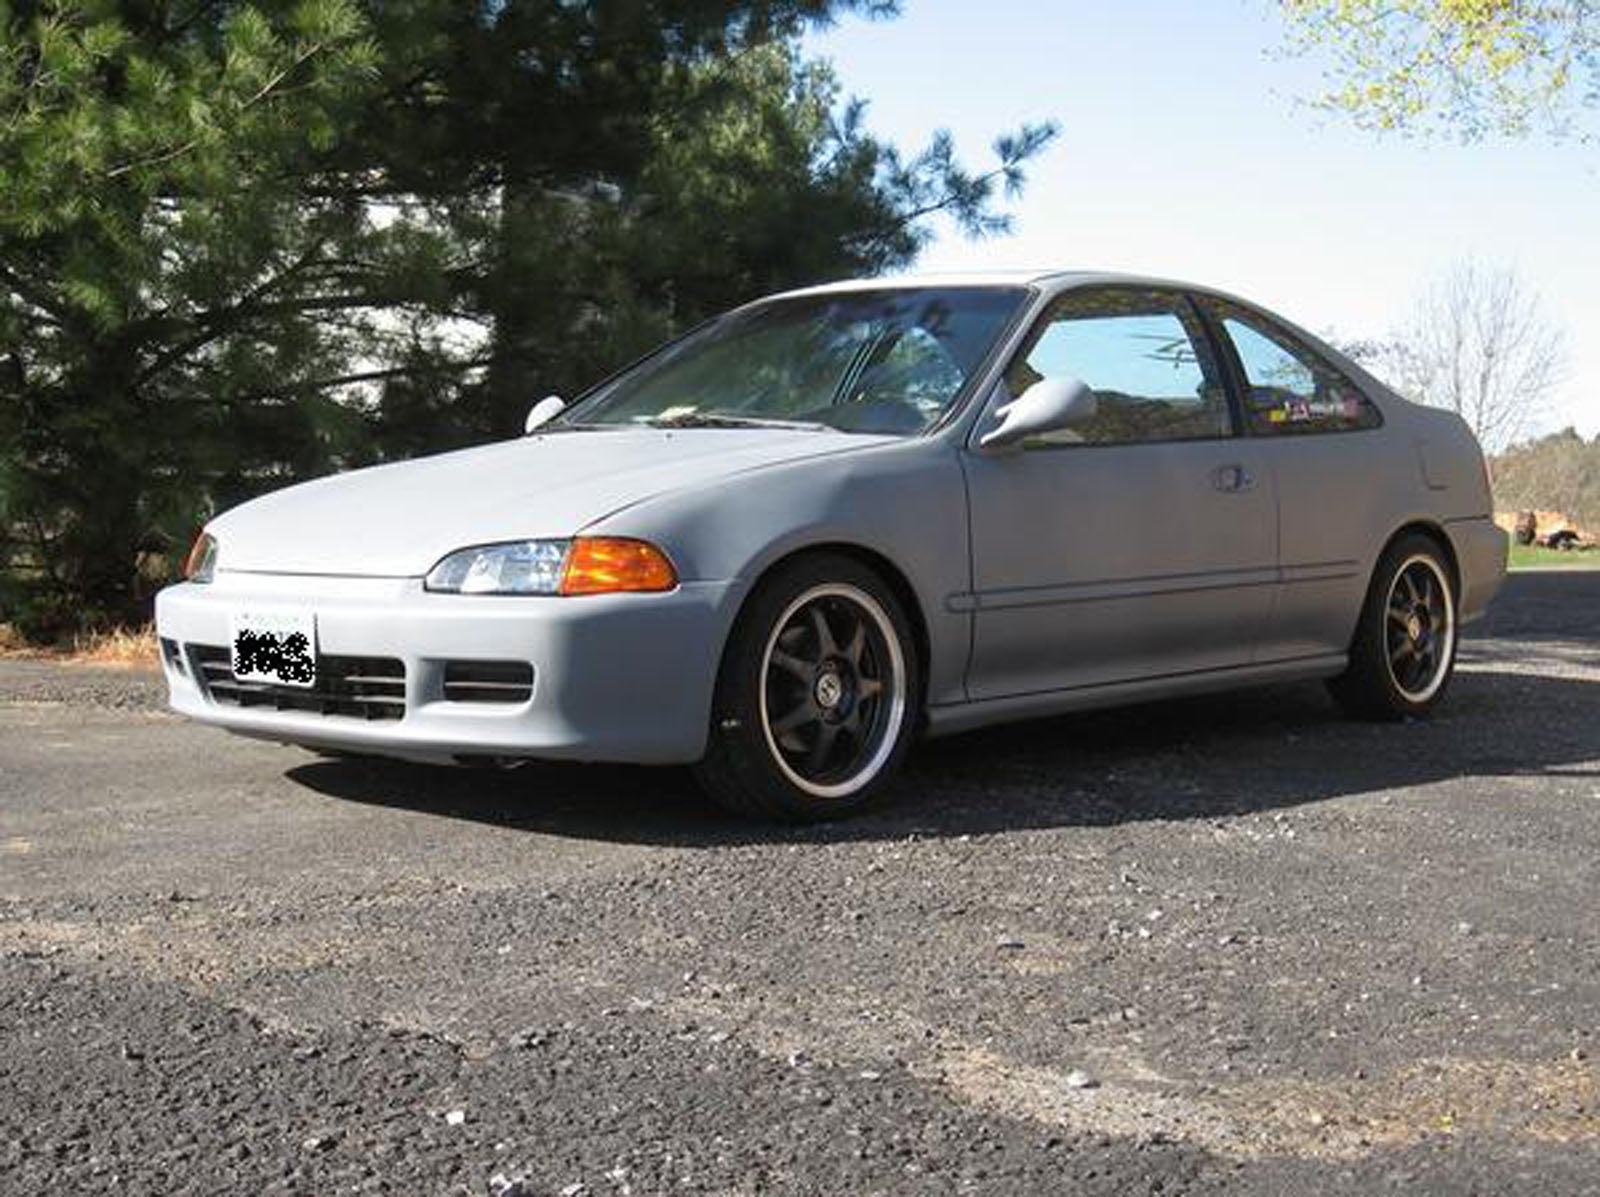 1995 Honda civic ex for sale